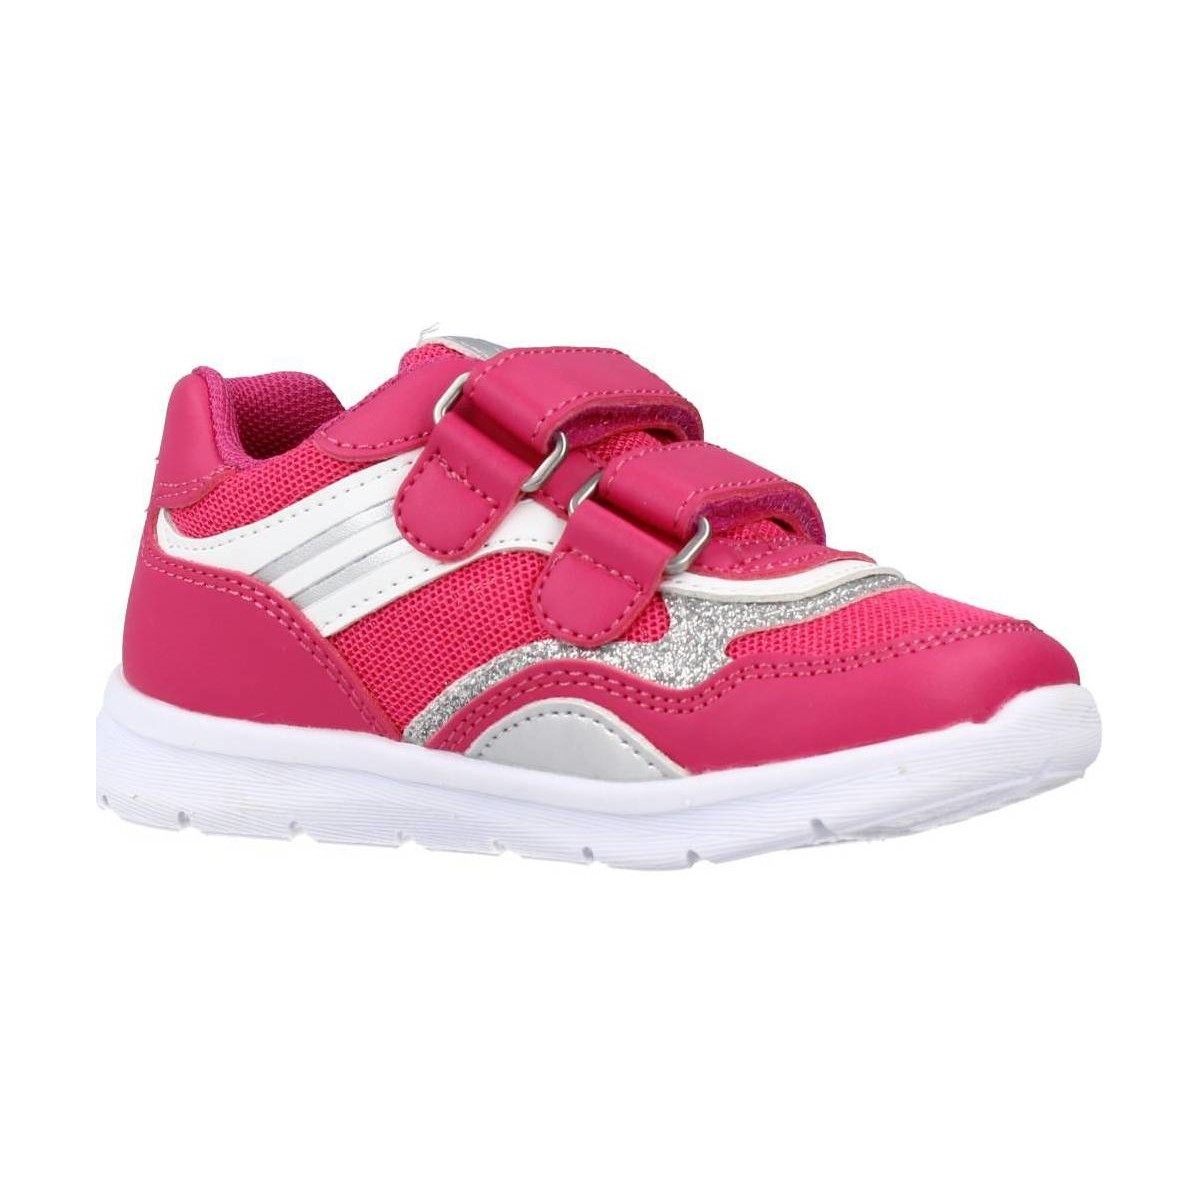 Cipők Lány Rövid szárú edzőcipők Chicco GART Rózsaszín